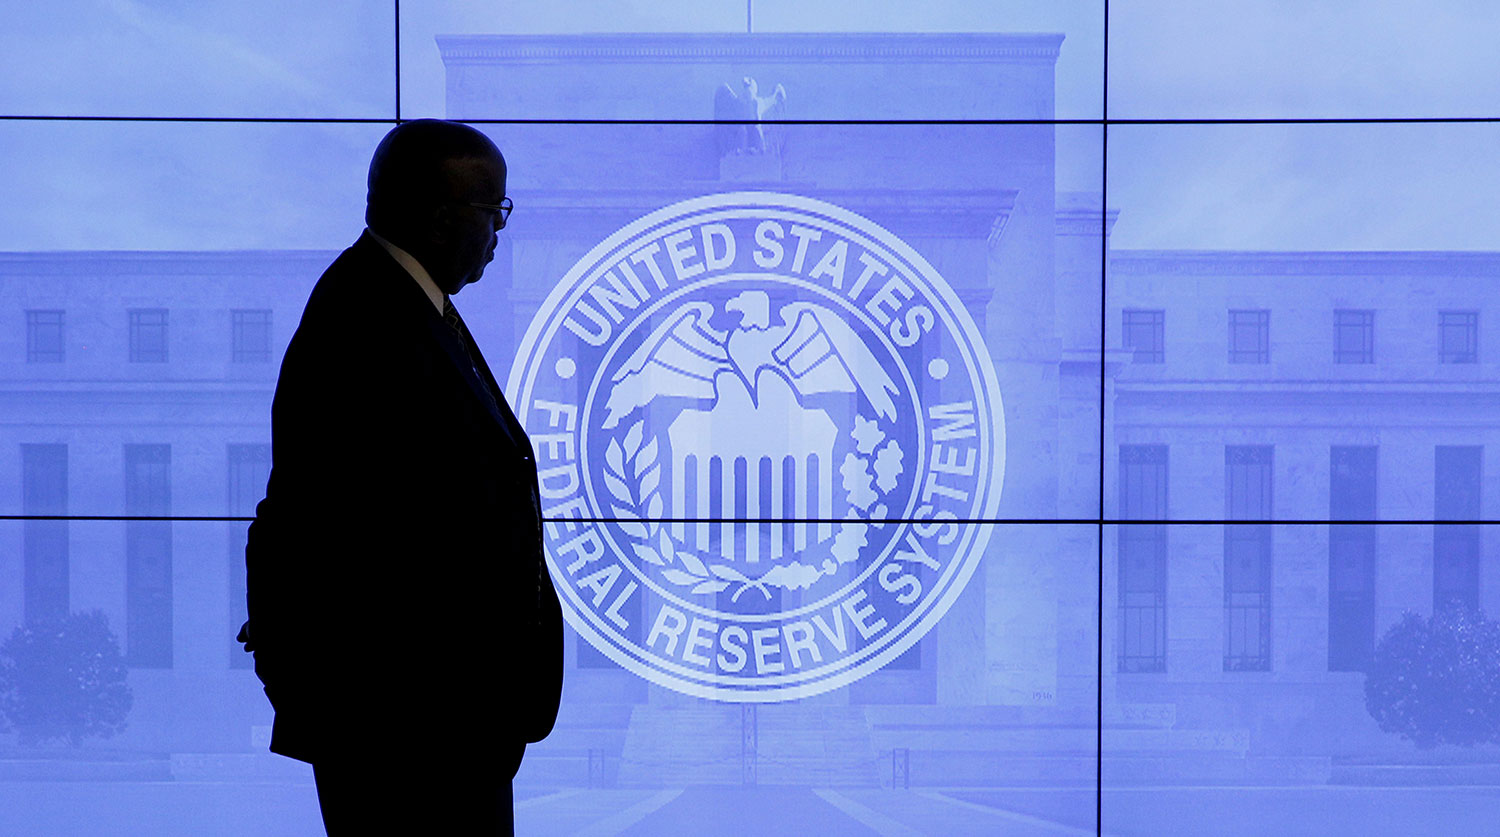 ФРС США сохранила базовую ставку